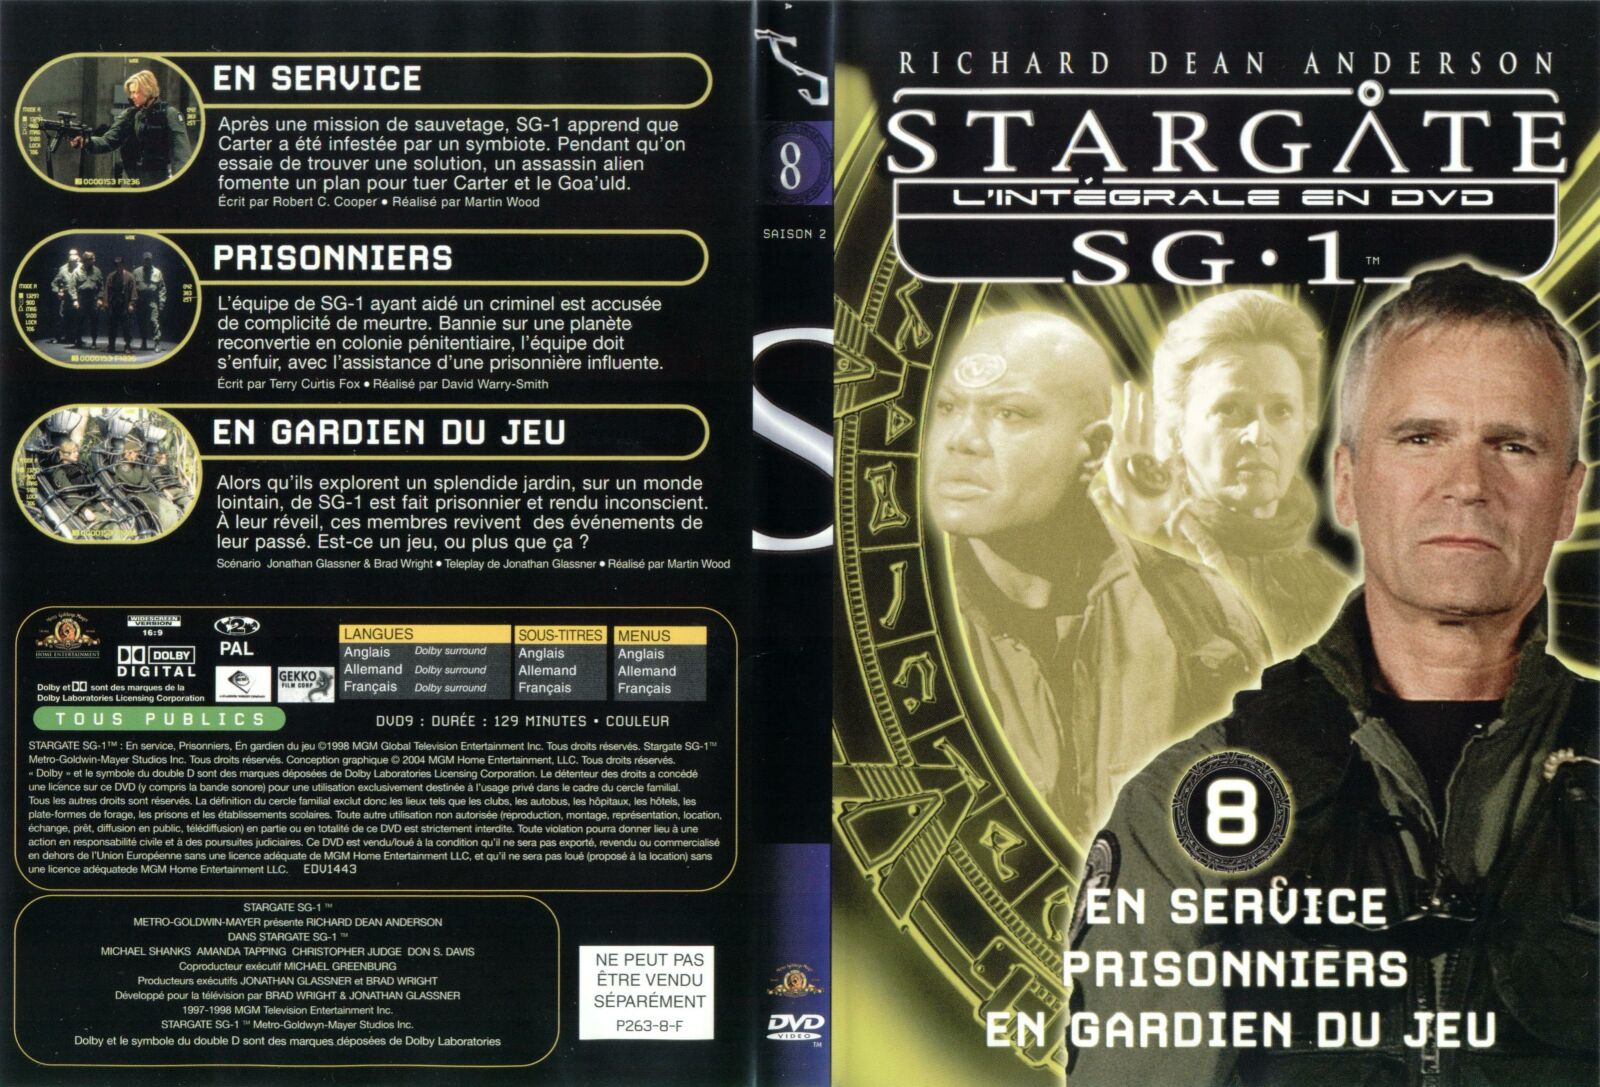 Jaquette DVD Stargate saison 2 vol 8